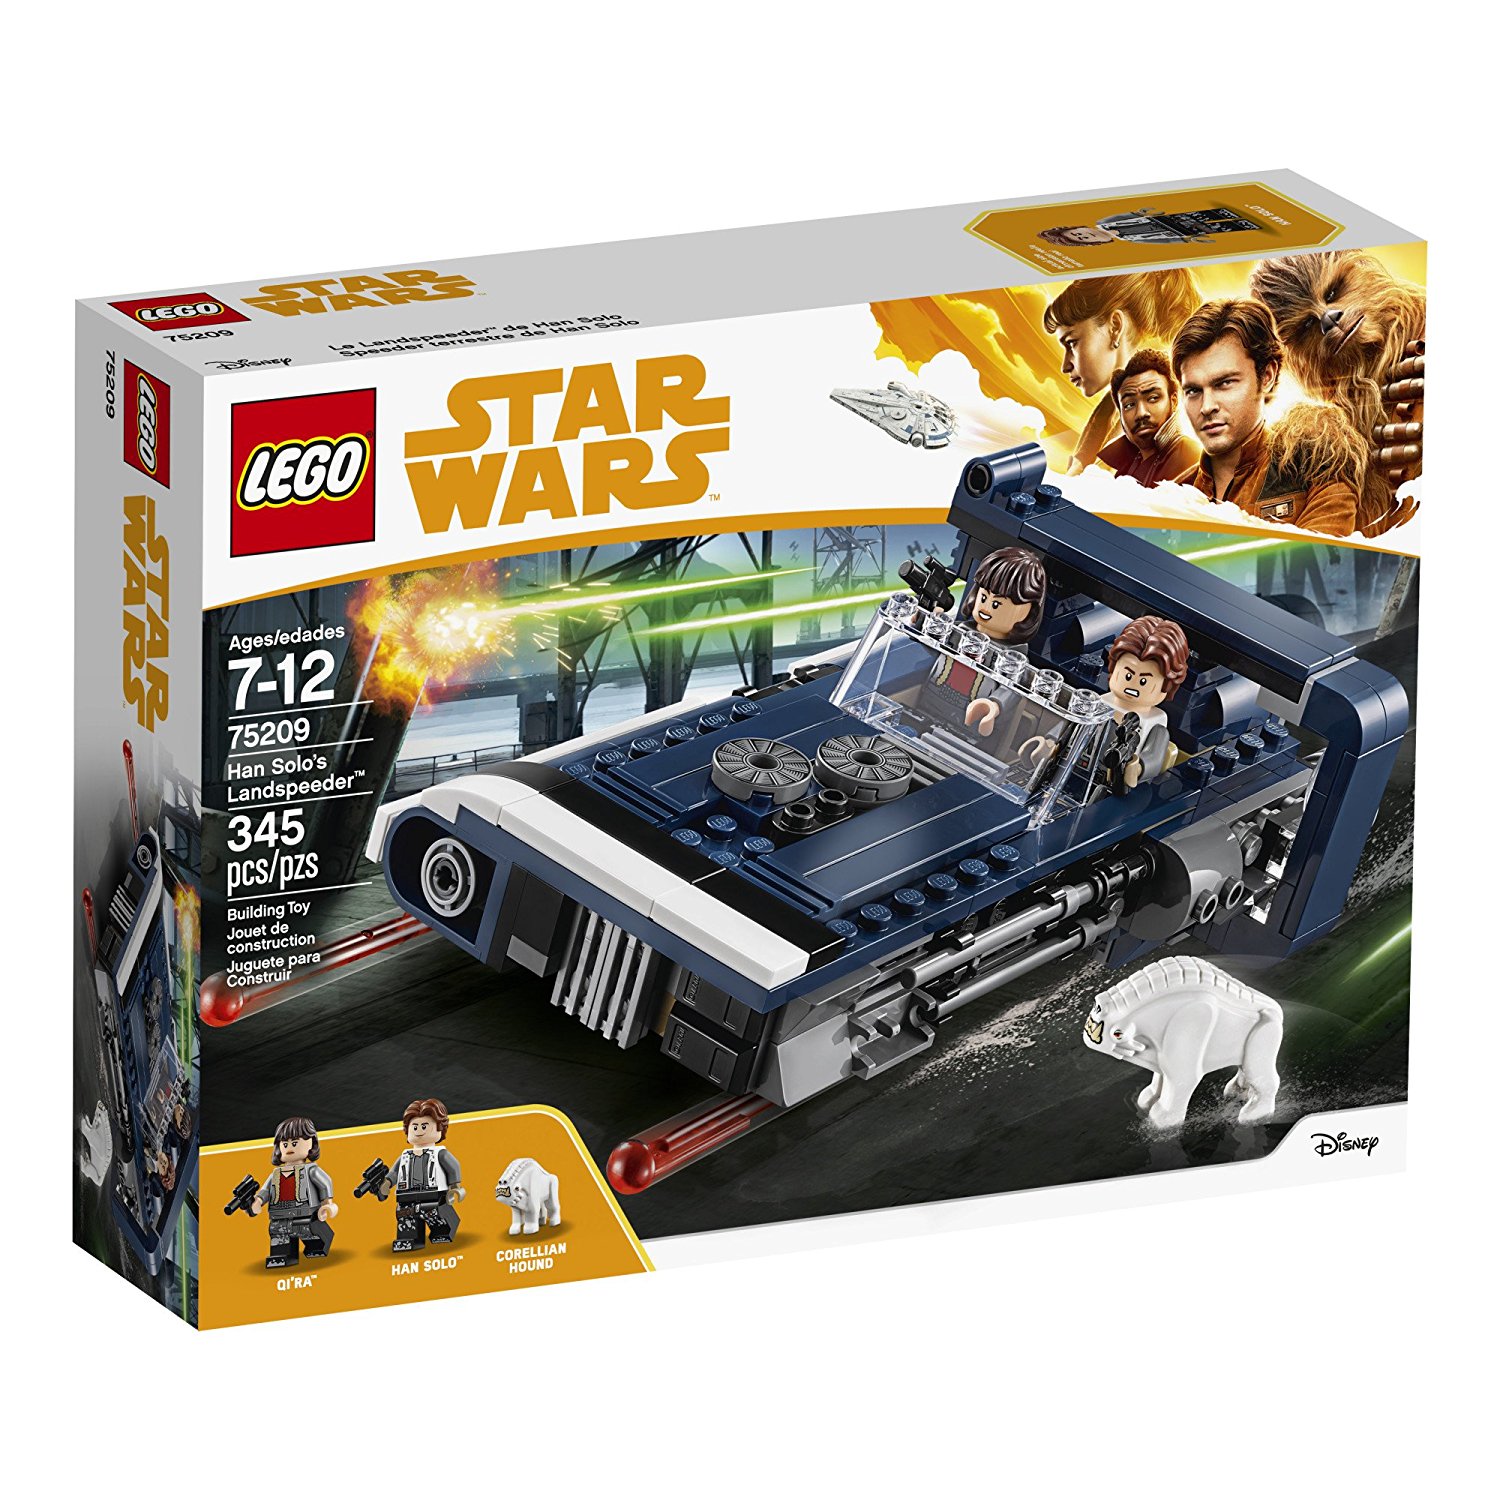 Solo: ASWS Han Solo's Landspeeder Lego Set 1